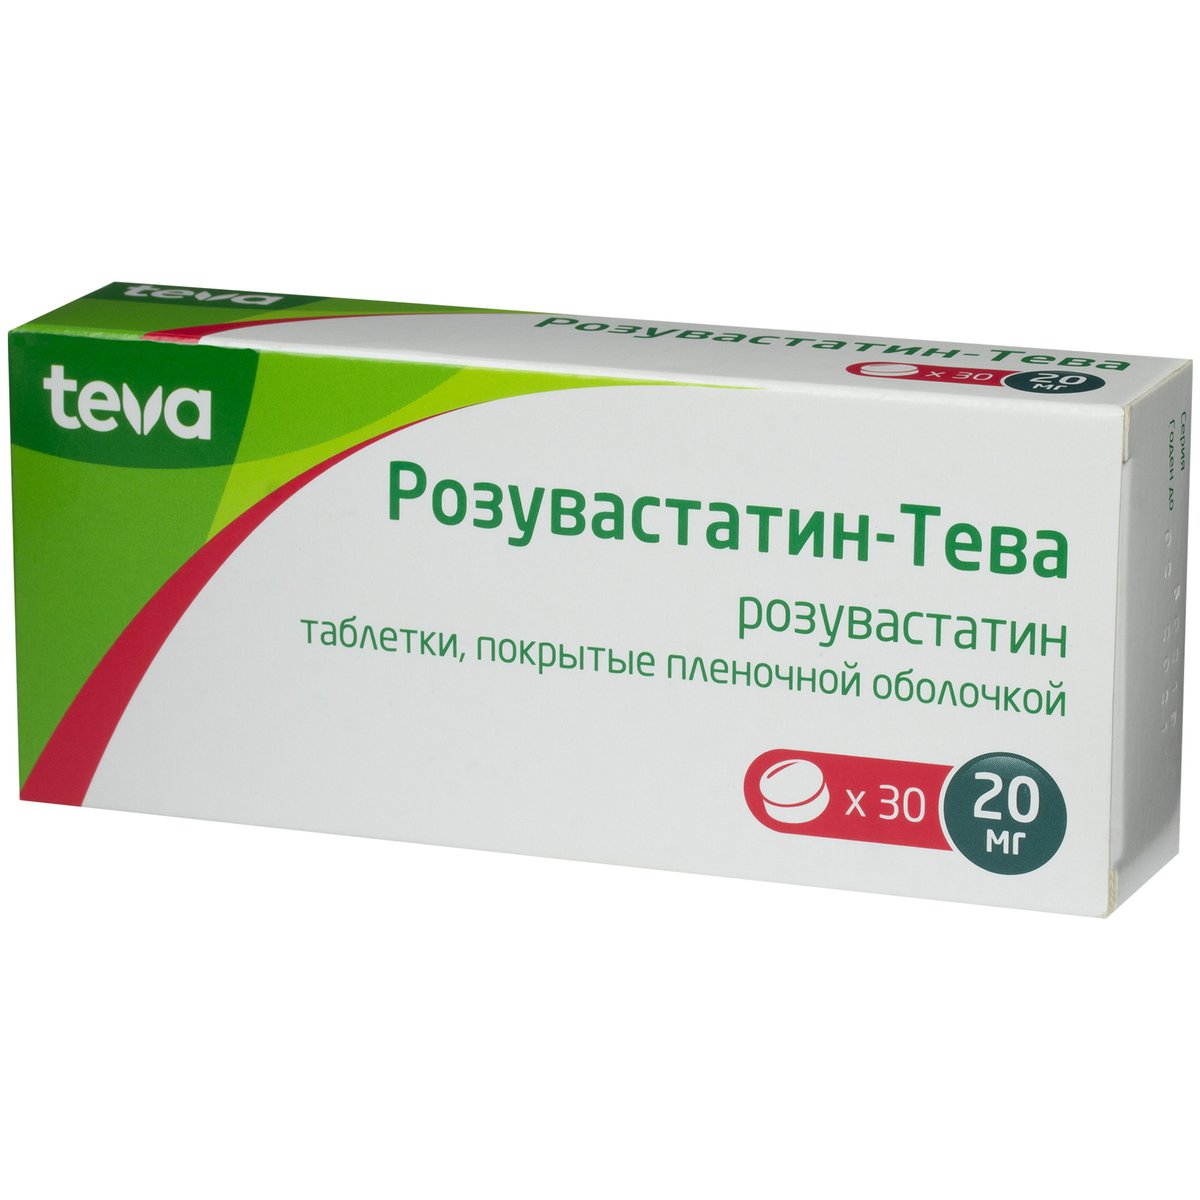 Розувастатин-Тева (таблетки, 30 шт, 20 мг) - цена,  онлайн в .